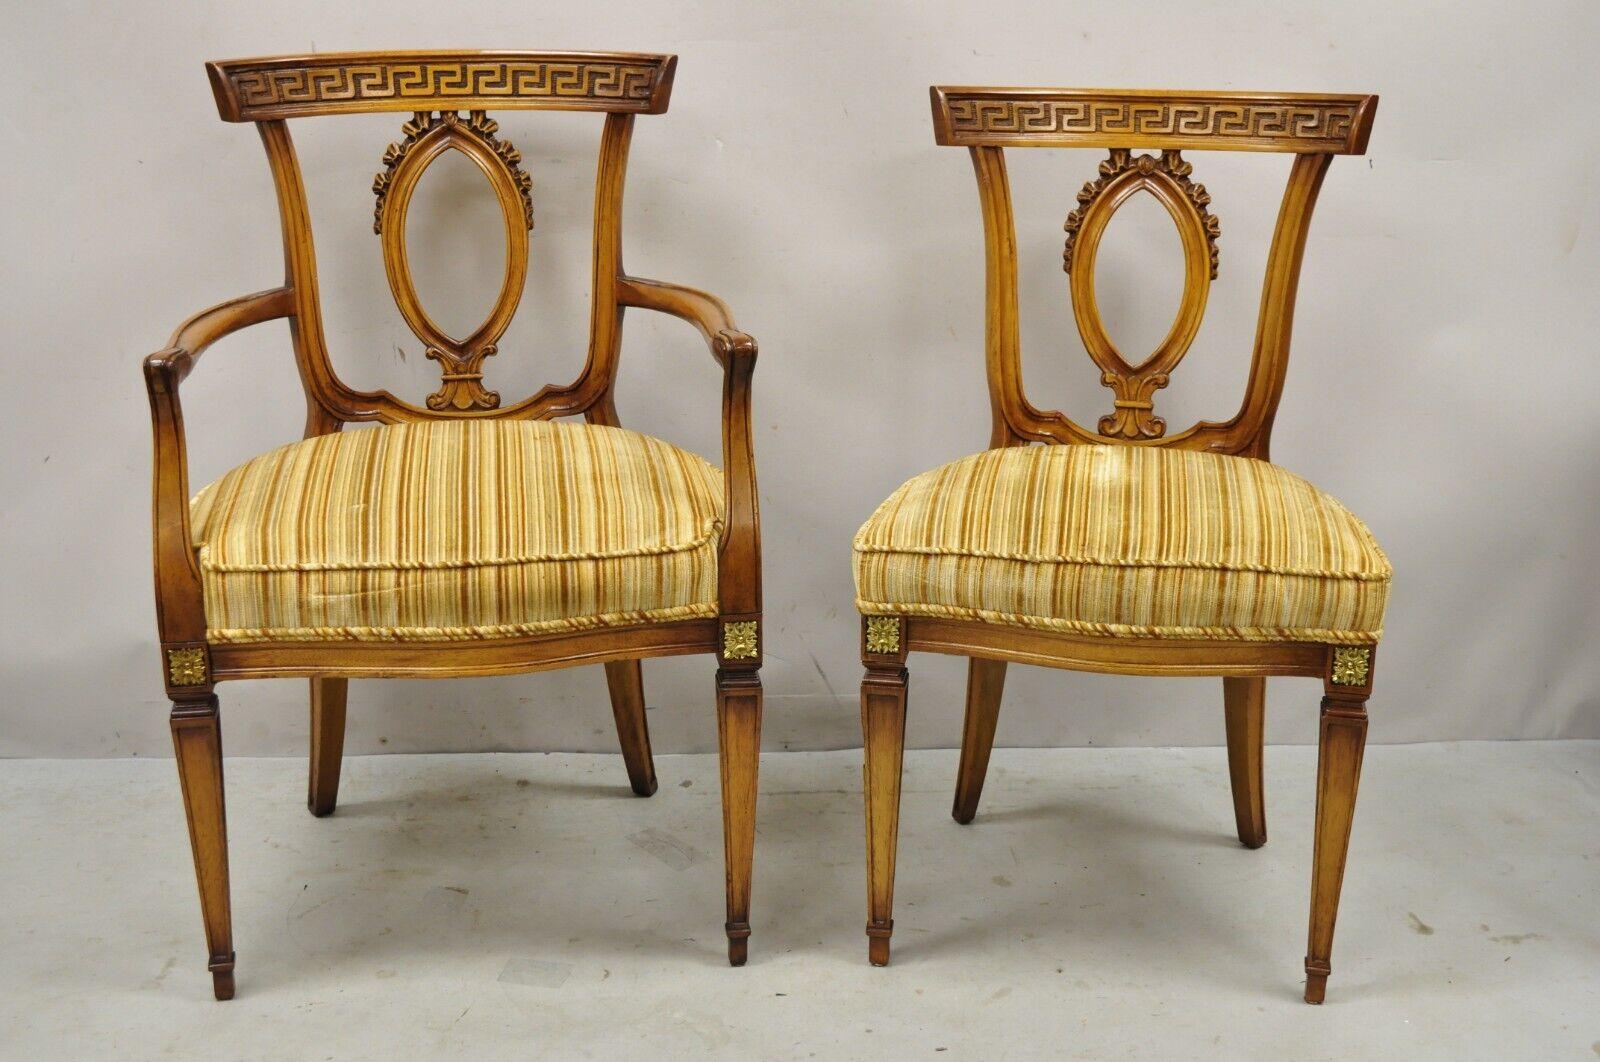 6 Vintage Italian Hollywood Regency Walnut Greek Neoclassical Key Dining Chairs. L'article comprend (2) fauteuils, (4) chaises latérales, dossiers sculptés en forme de clé grecque, pieds en laiton orné de bronze, cadres en bois massif, beau grain de